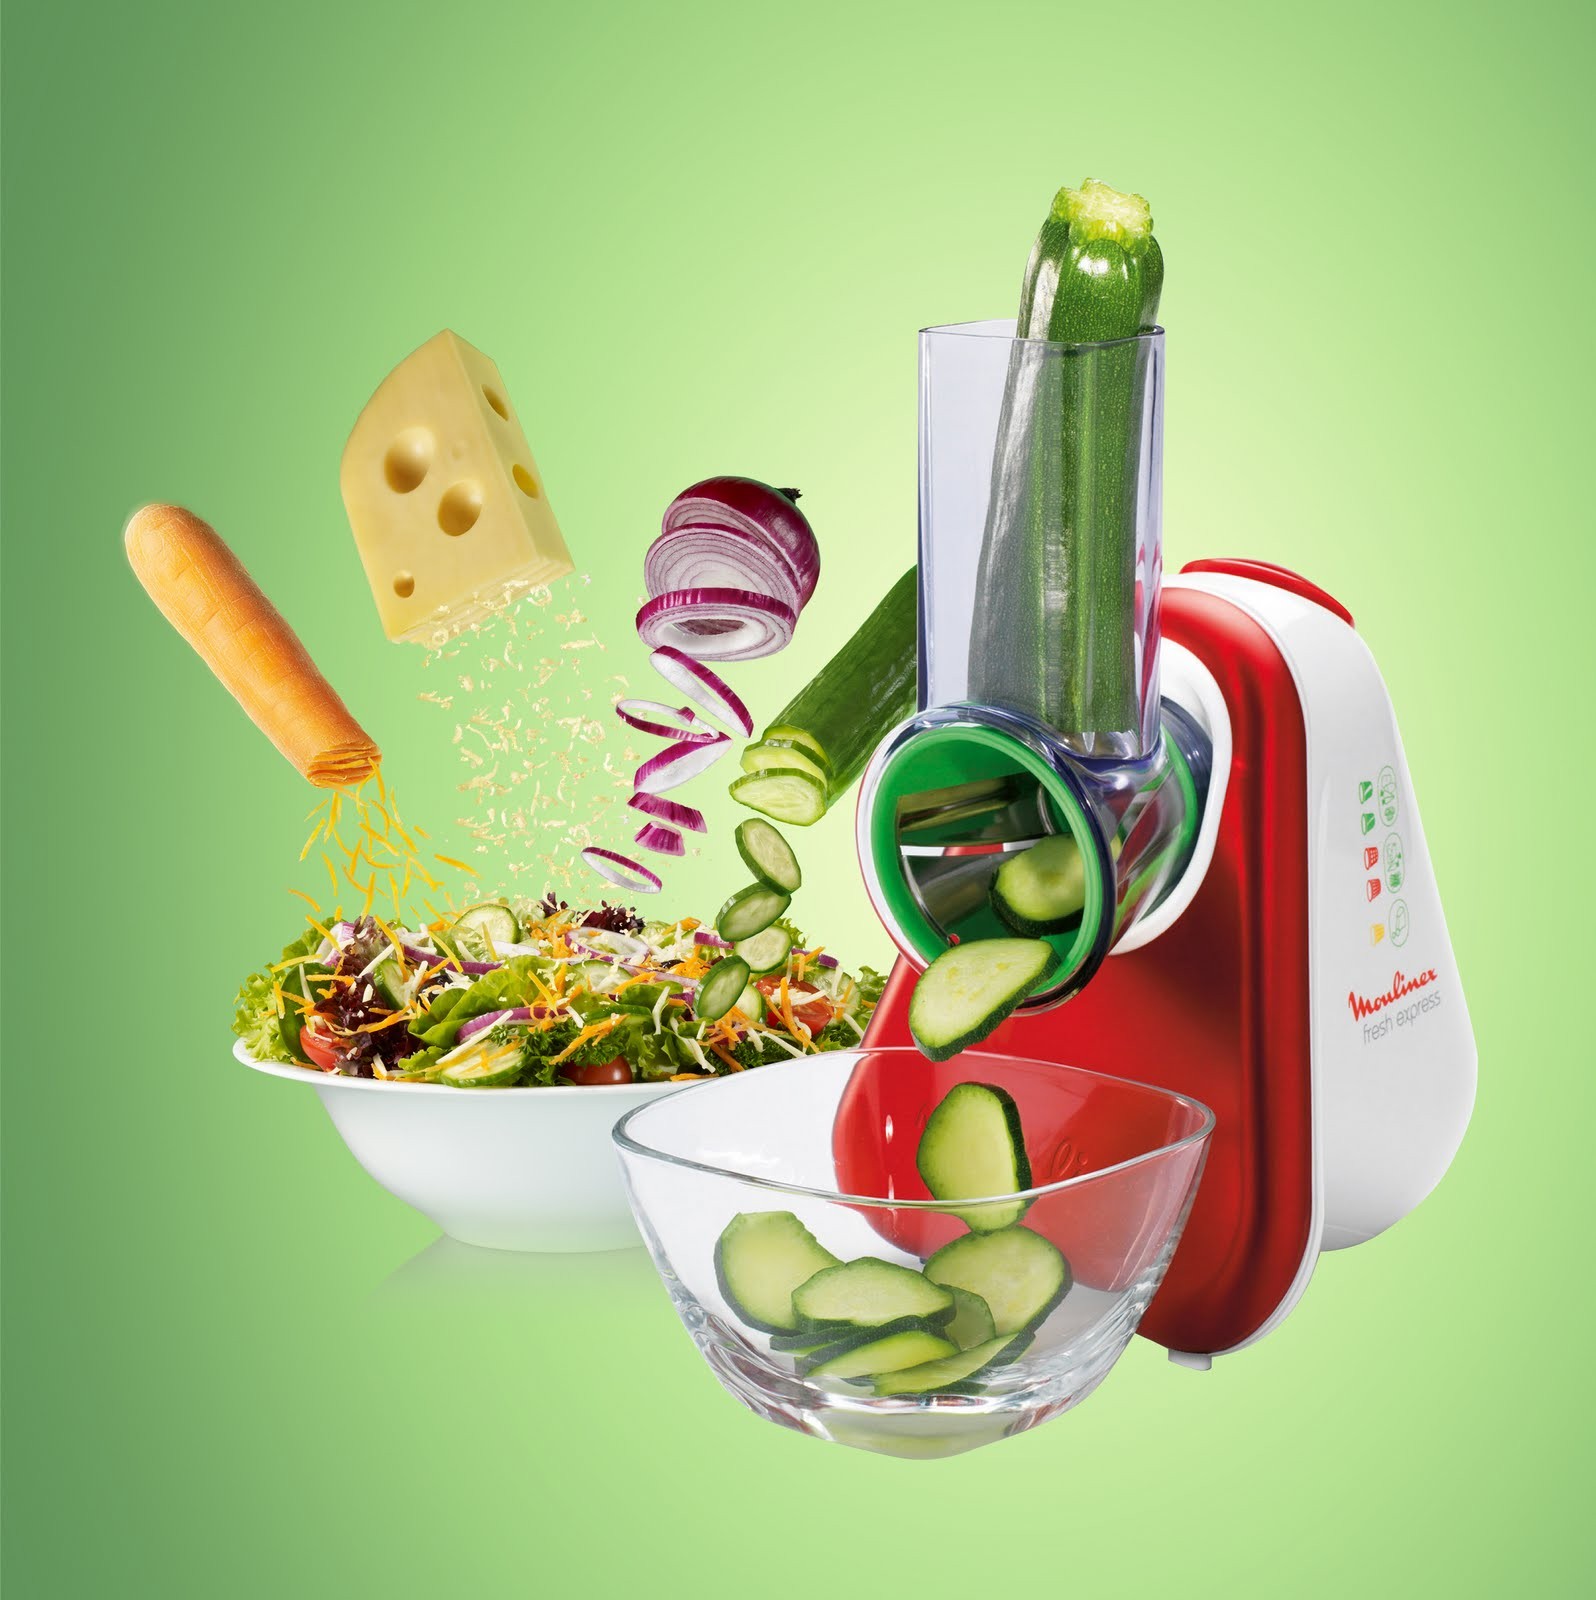 Comer verduras será muy fácil gracias a este rallador eléctrico de Moulinex  a un buen precio en Lidl